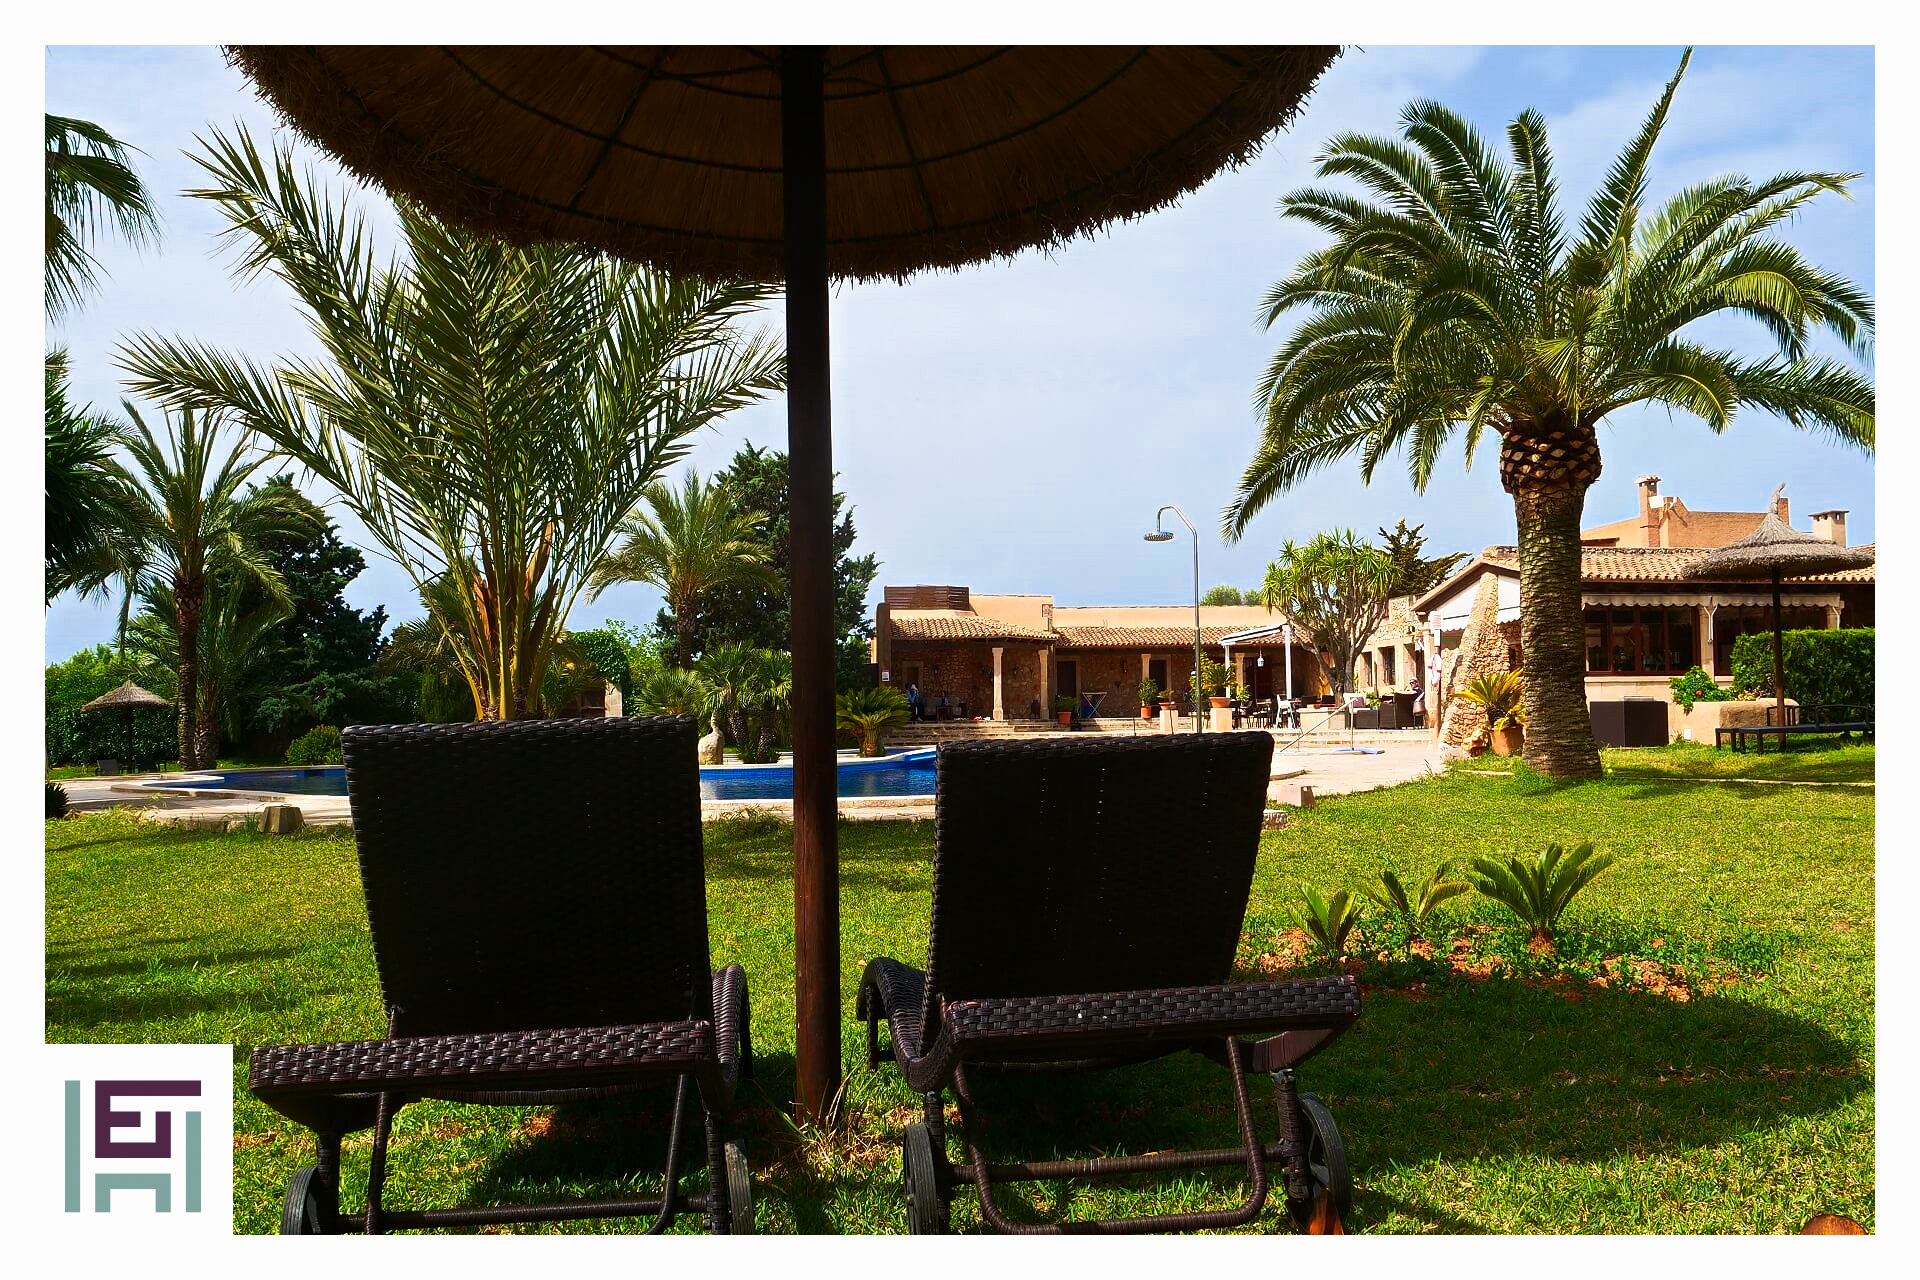 Finca-Hotel Sa Tanca - Sunbathing lawn